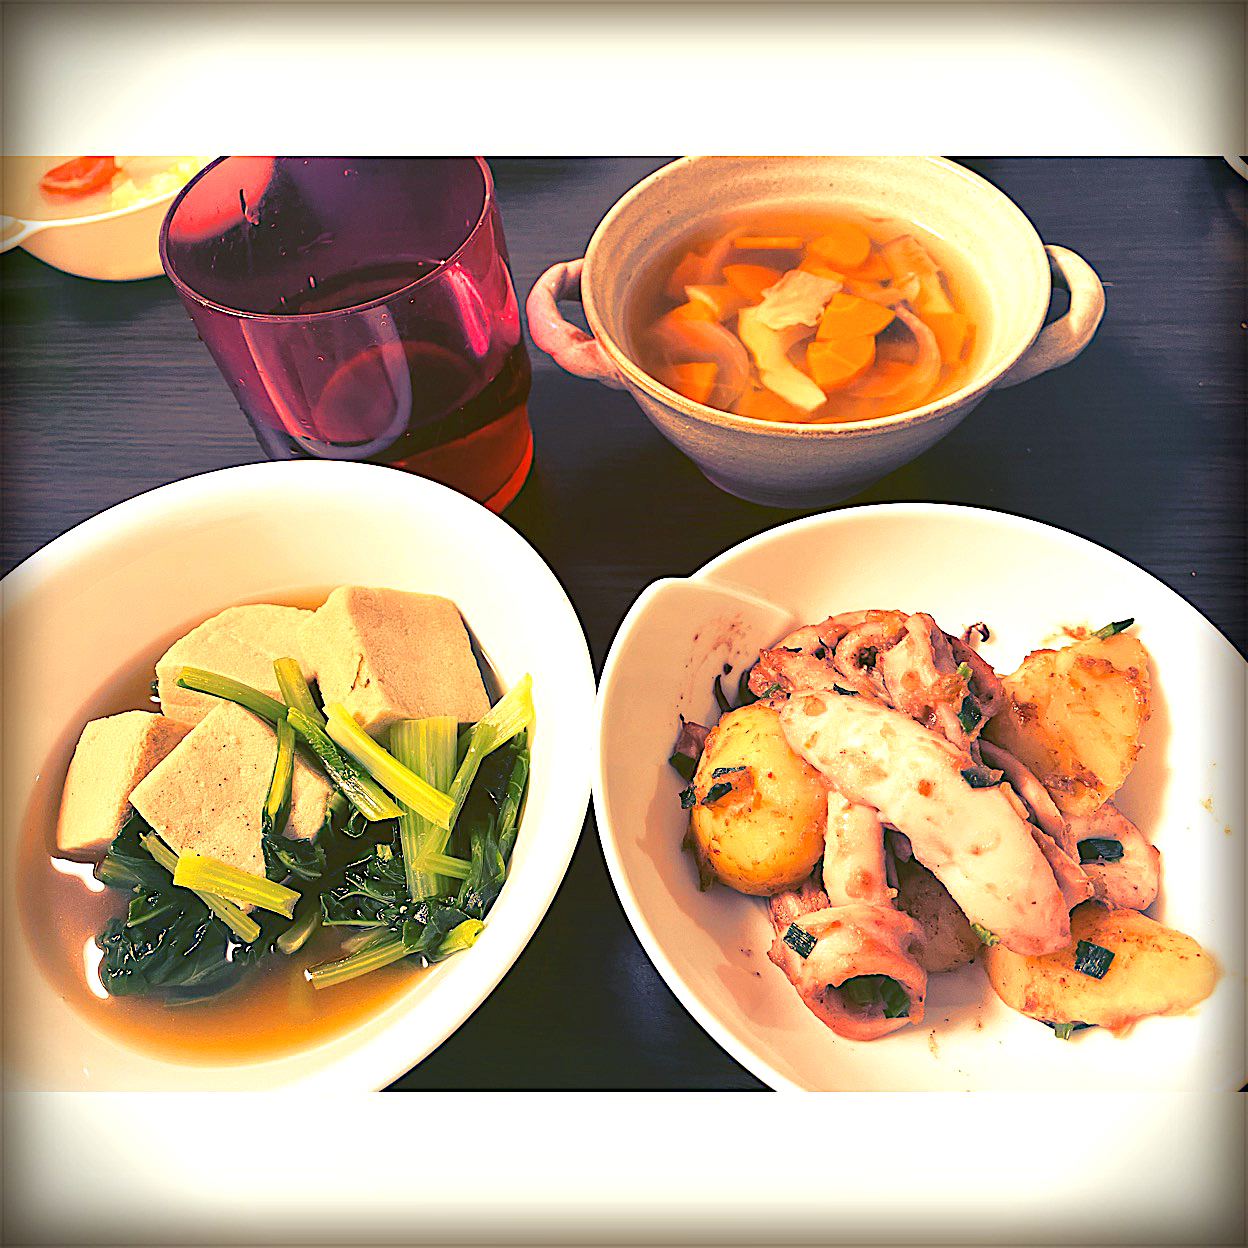 いかとじゃがいものガリバタ炒め、小松菜と高野豆腐のお浸し、えりんぎとにんじんのスープ